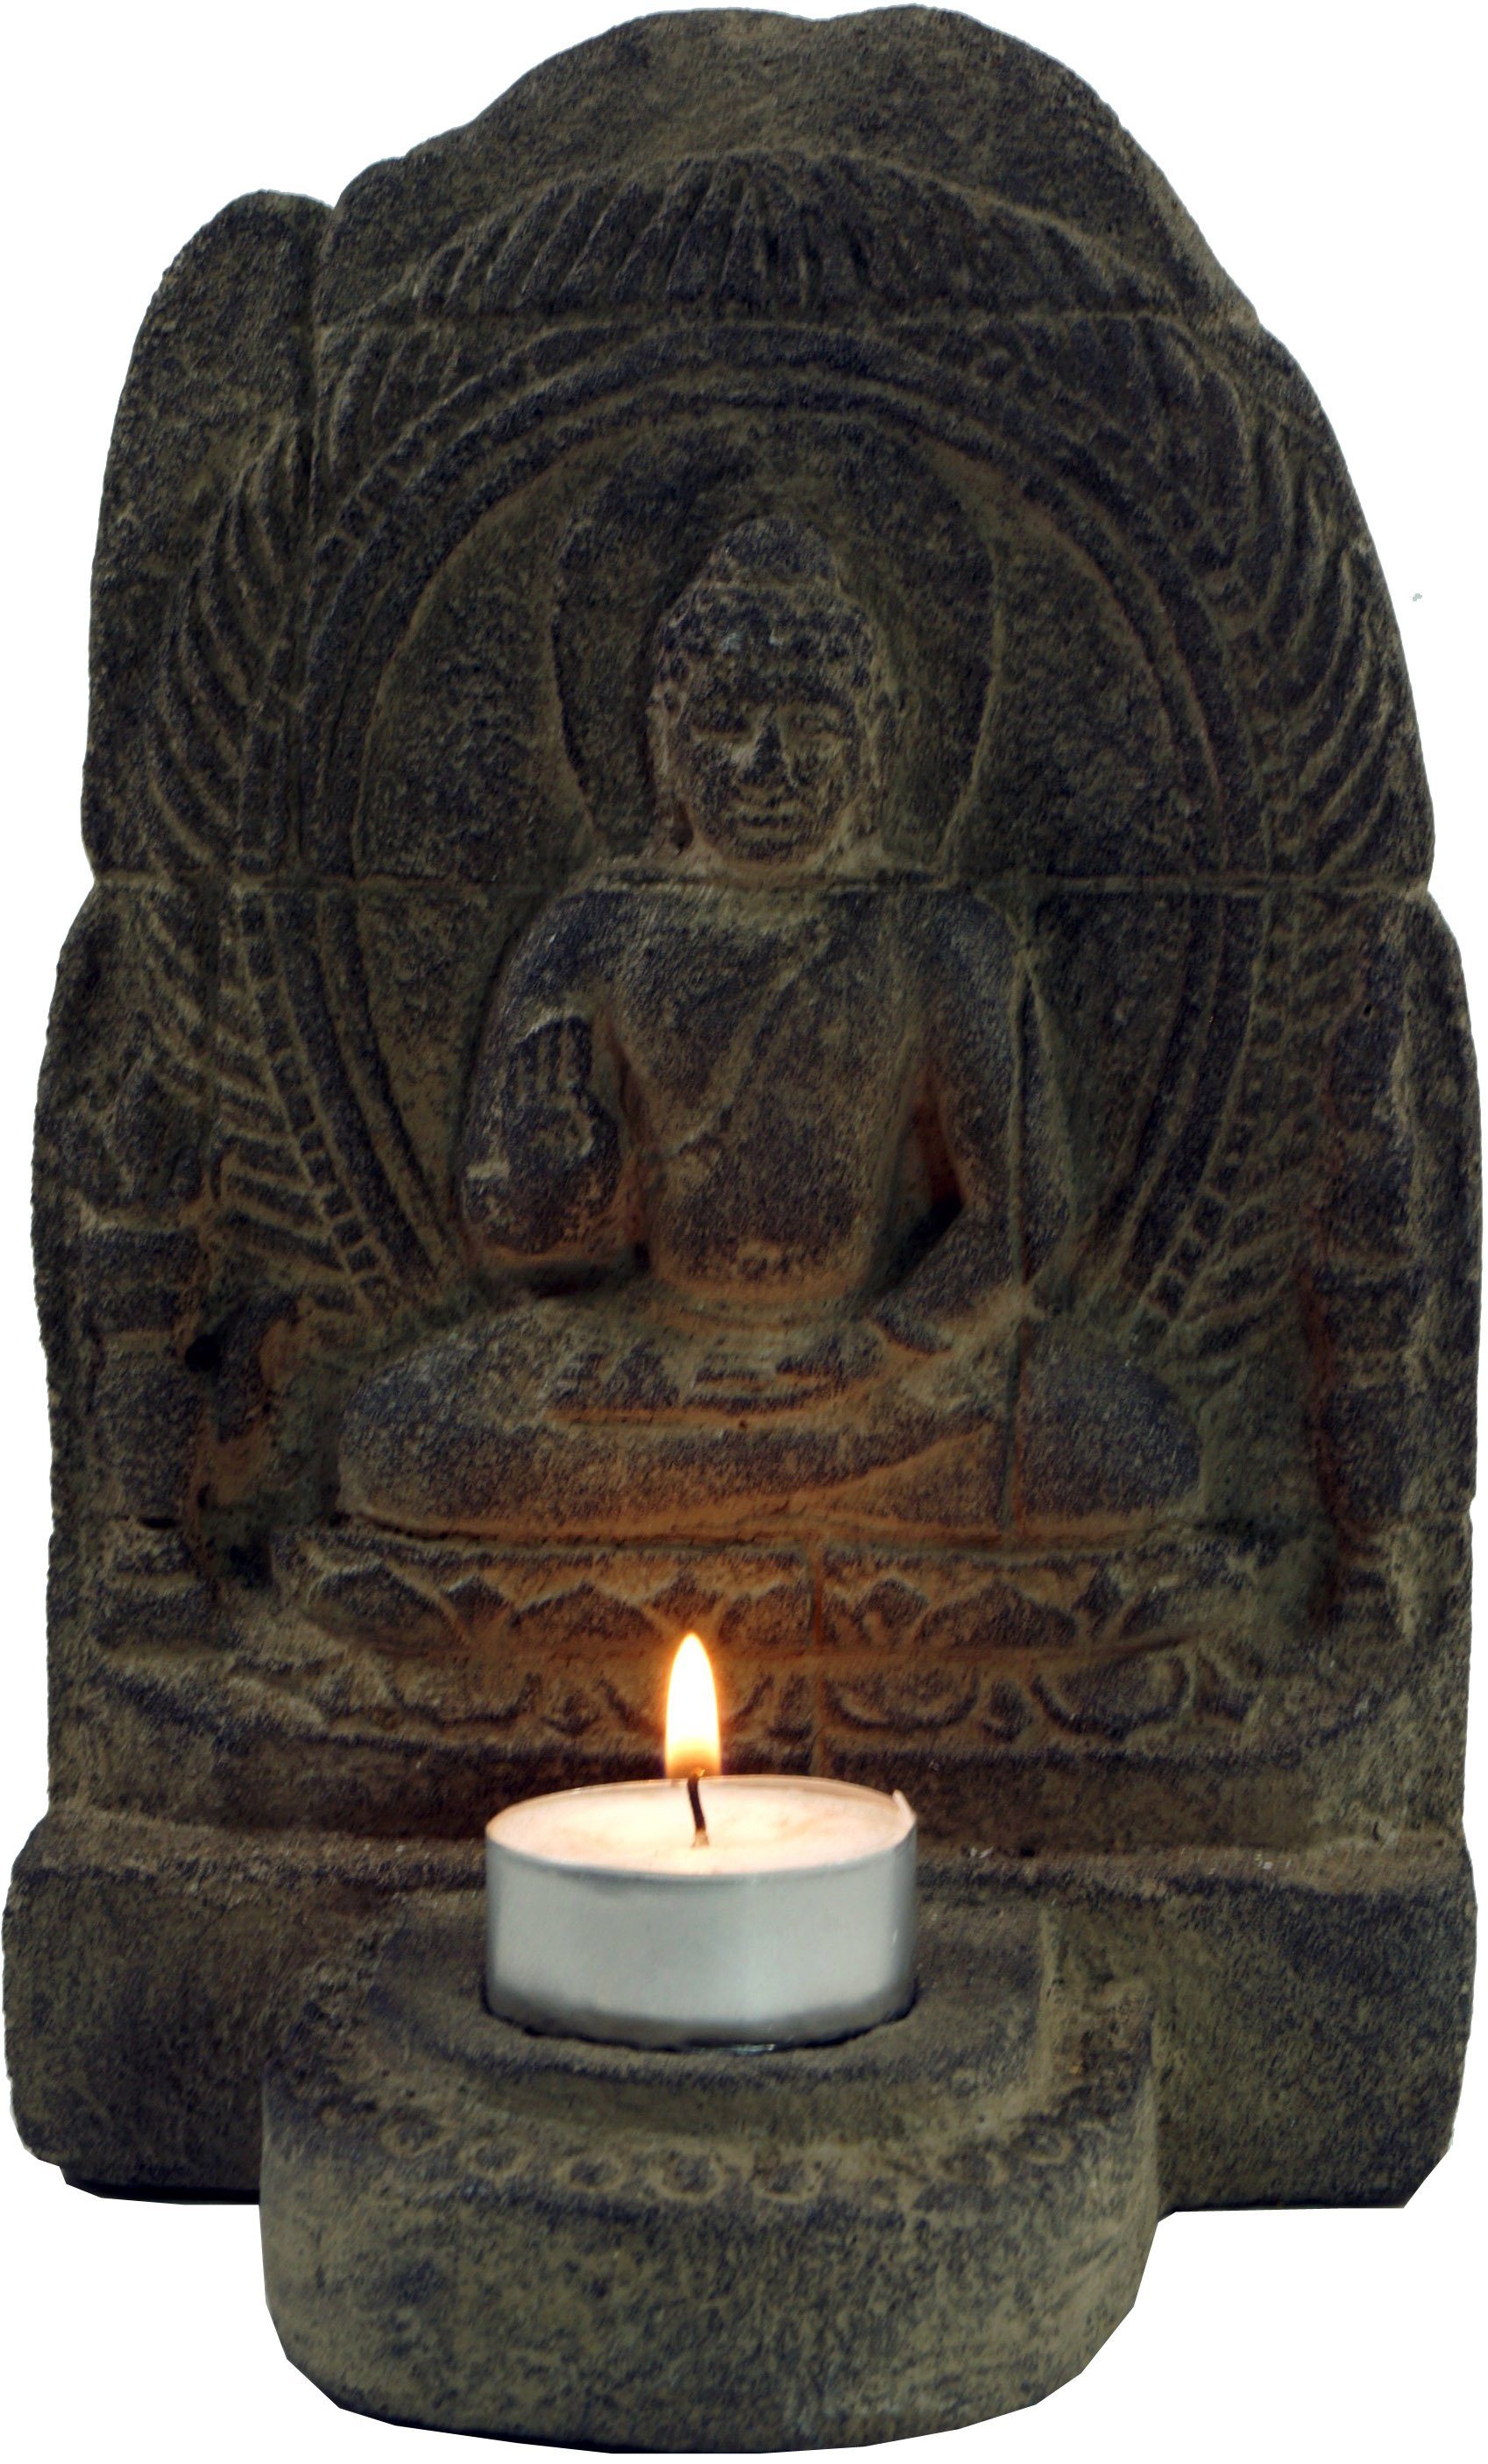 Stein Buddhafigur Minitempel, Teelichthalter Buddhafigur, Guru-Shop aus